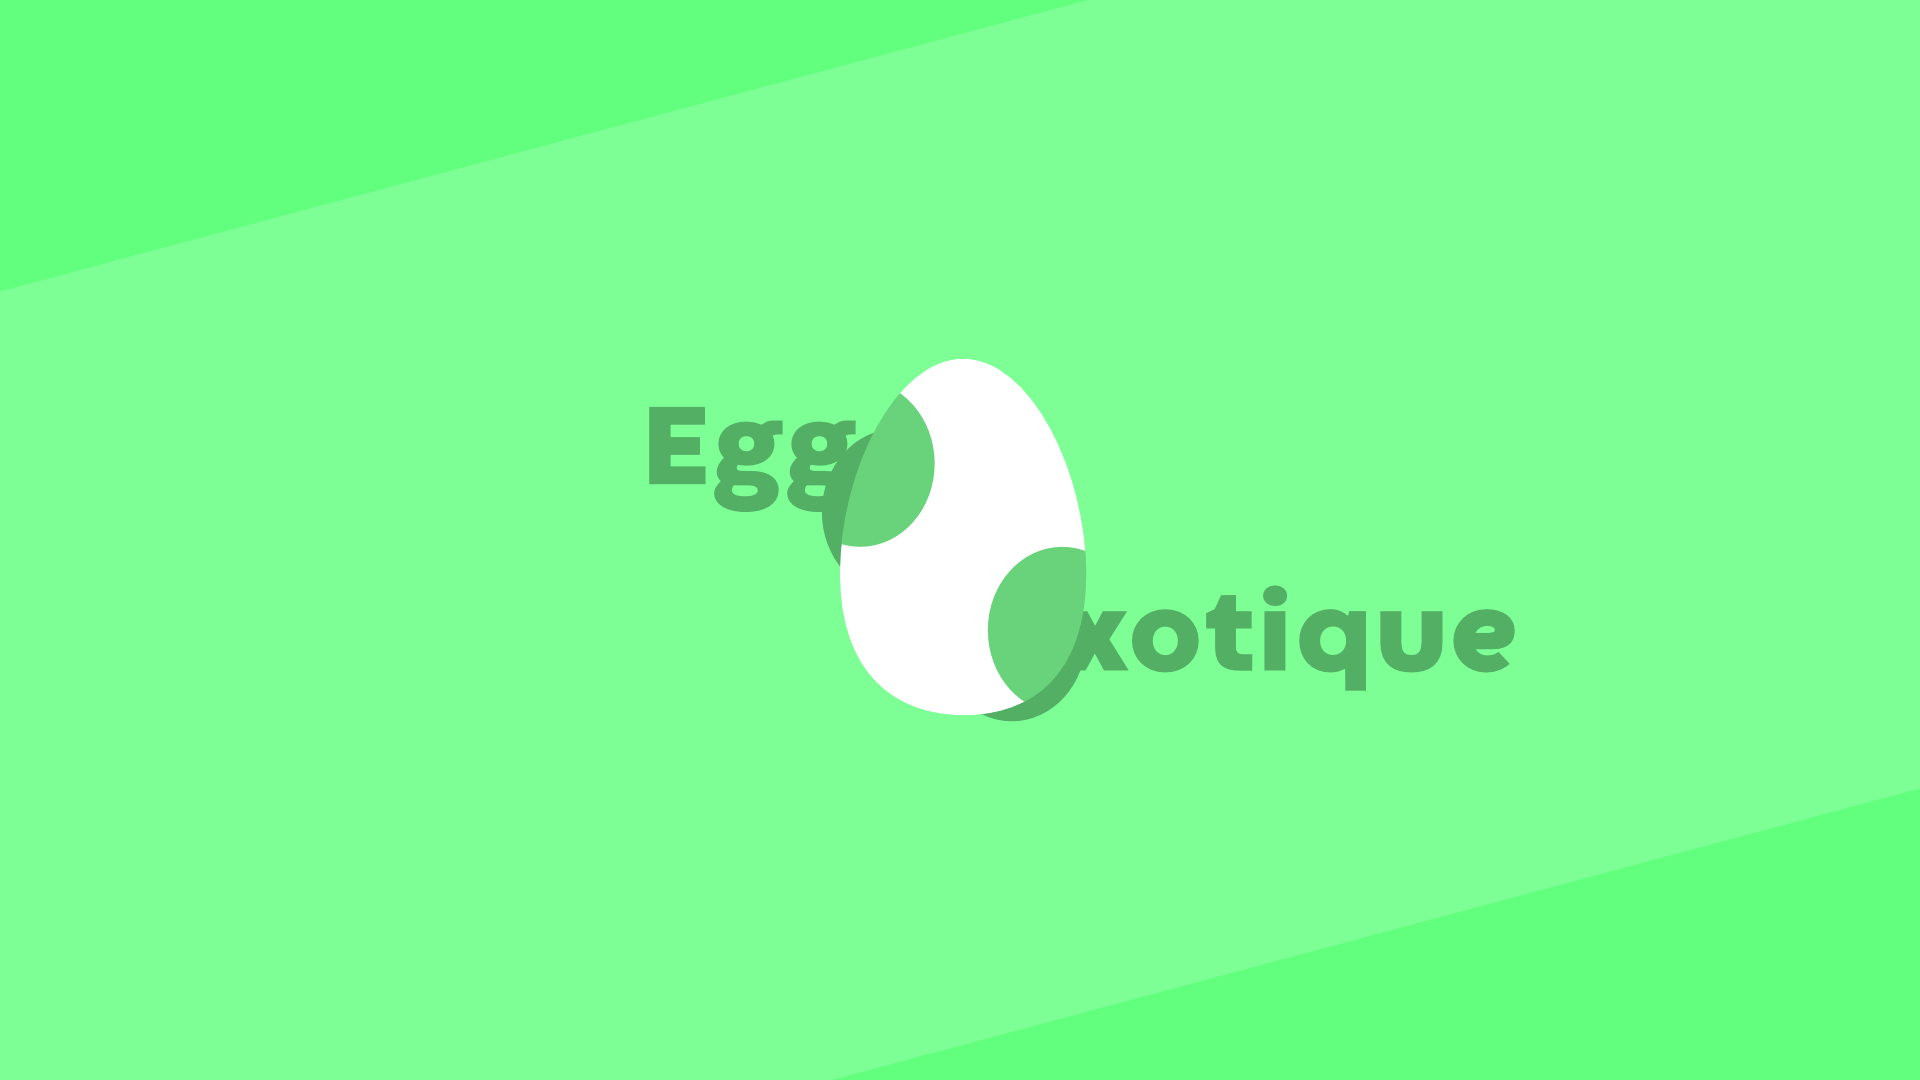 Egg-xotique